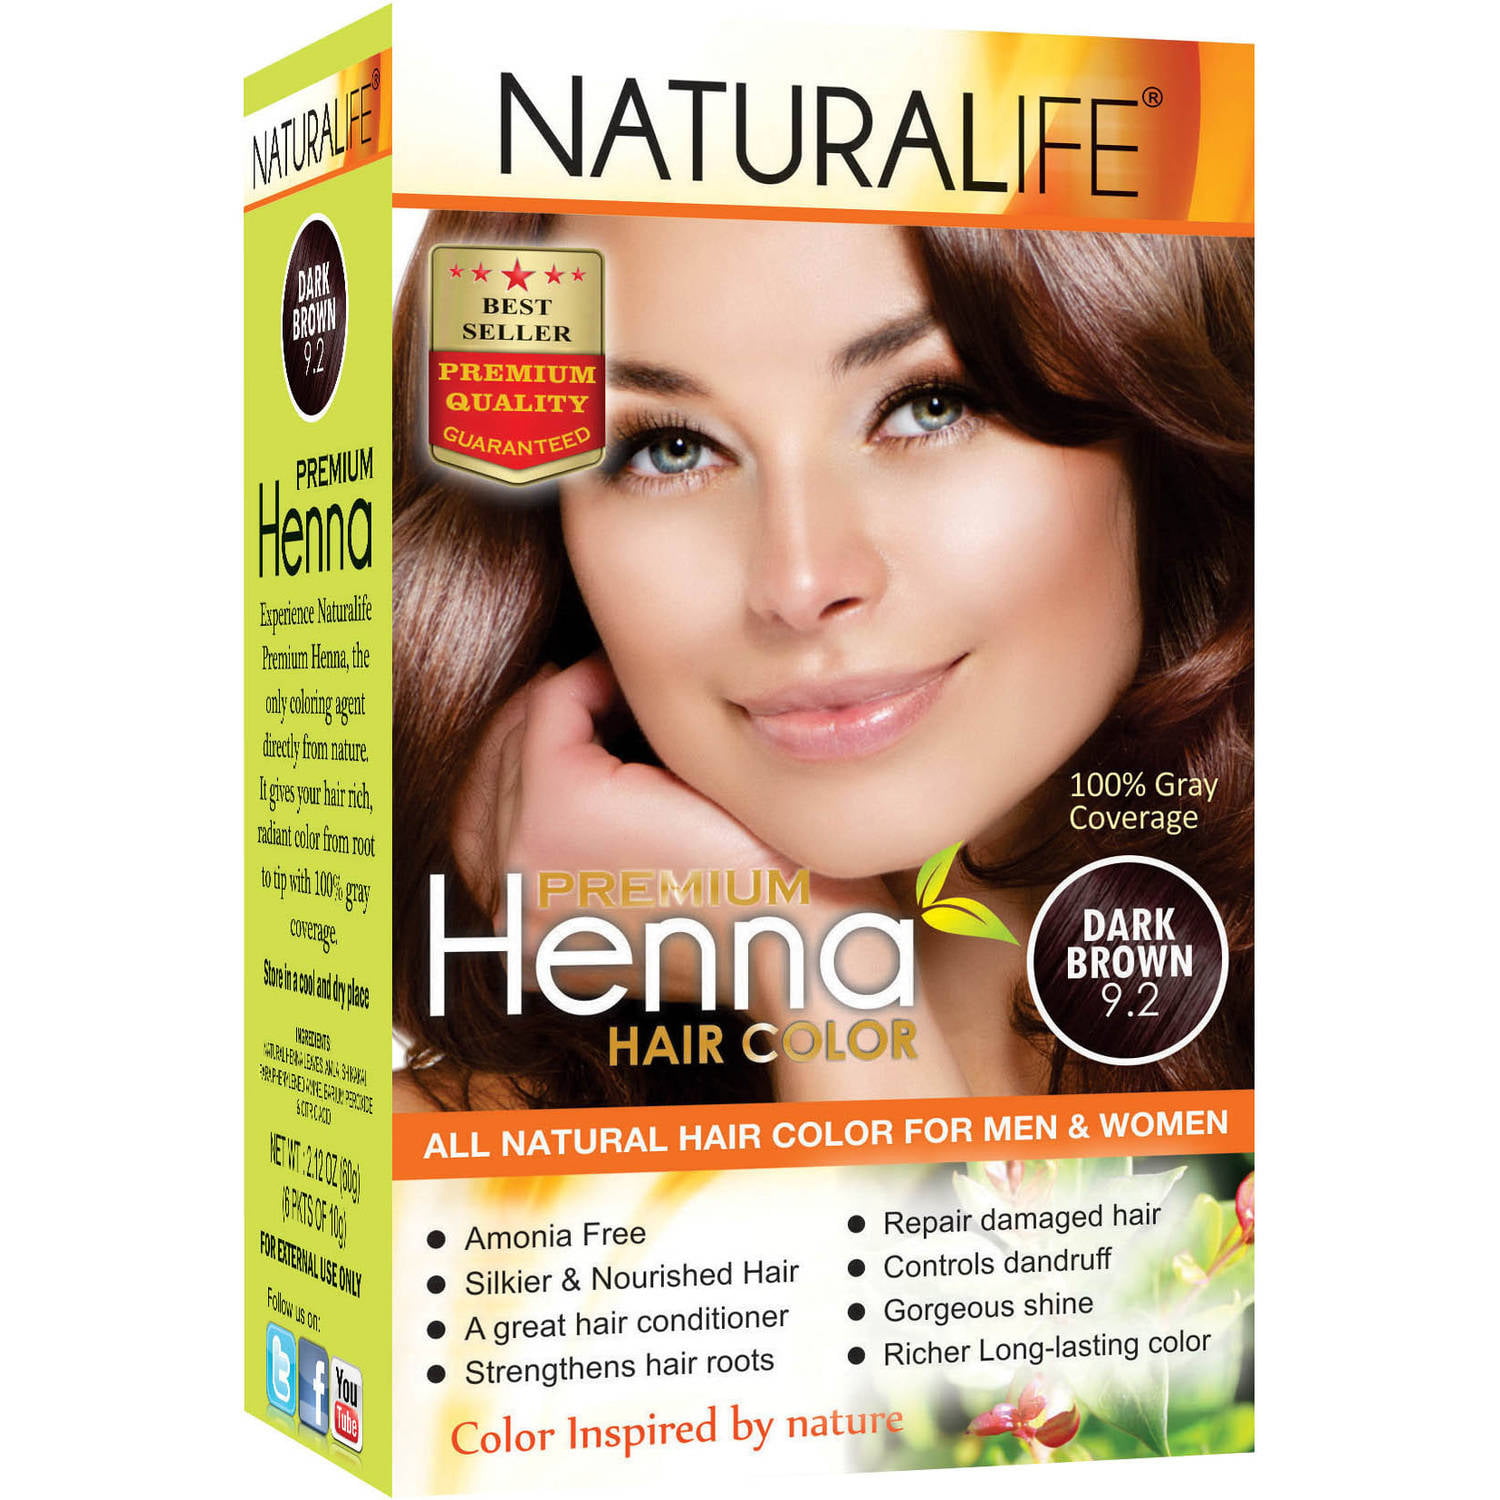 Naturalife Henna Natural Hair Color for Men & Women, Dark Brown  -  